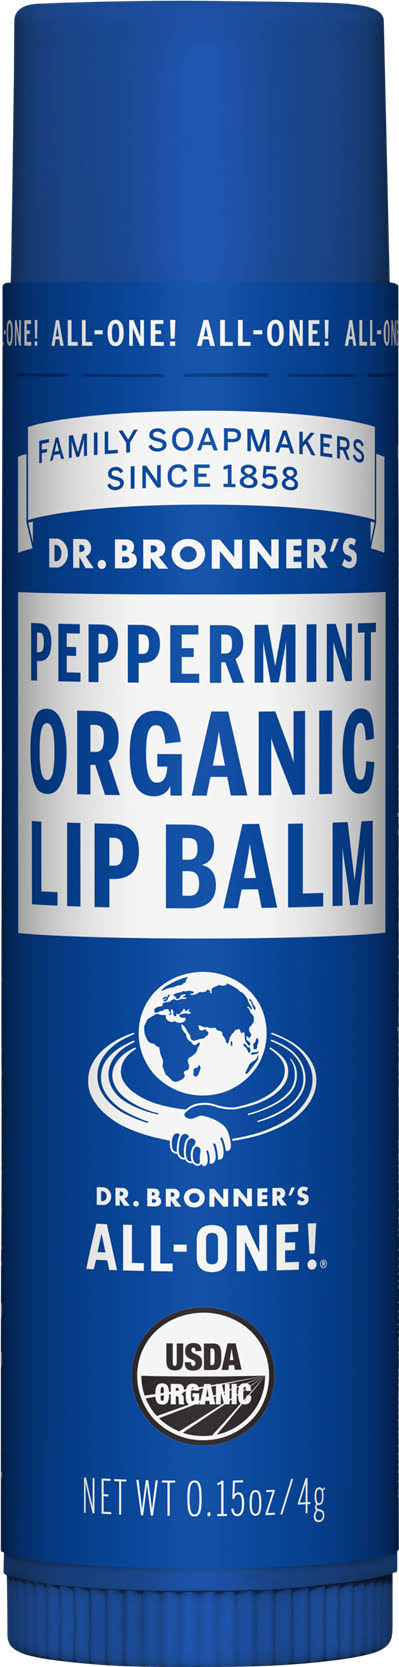 Dr. Bronner's Organic Lip Balm - Peppermint, 4g